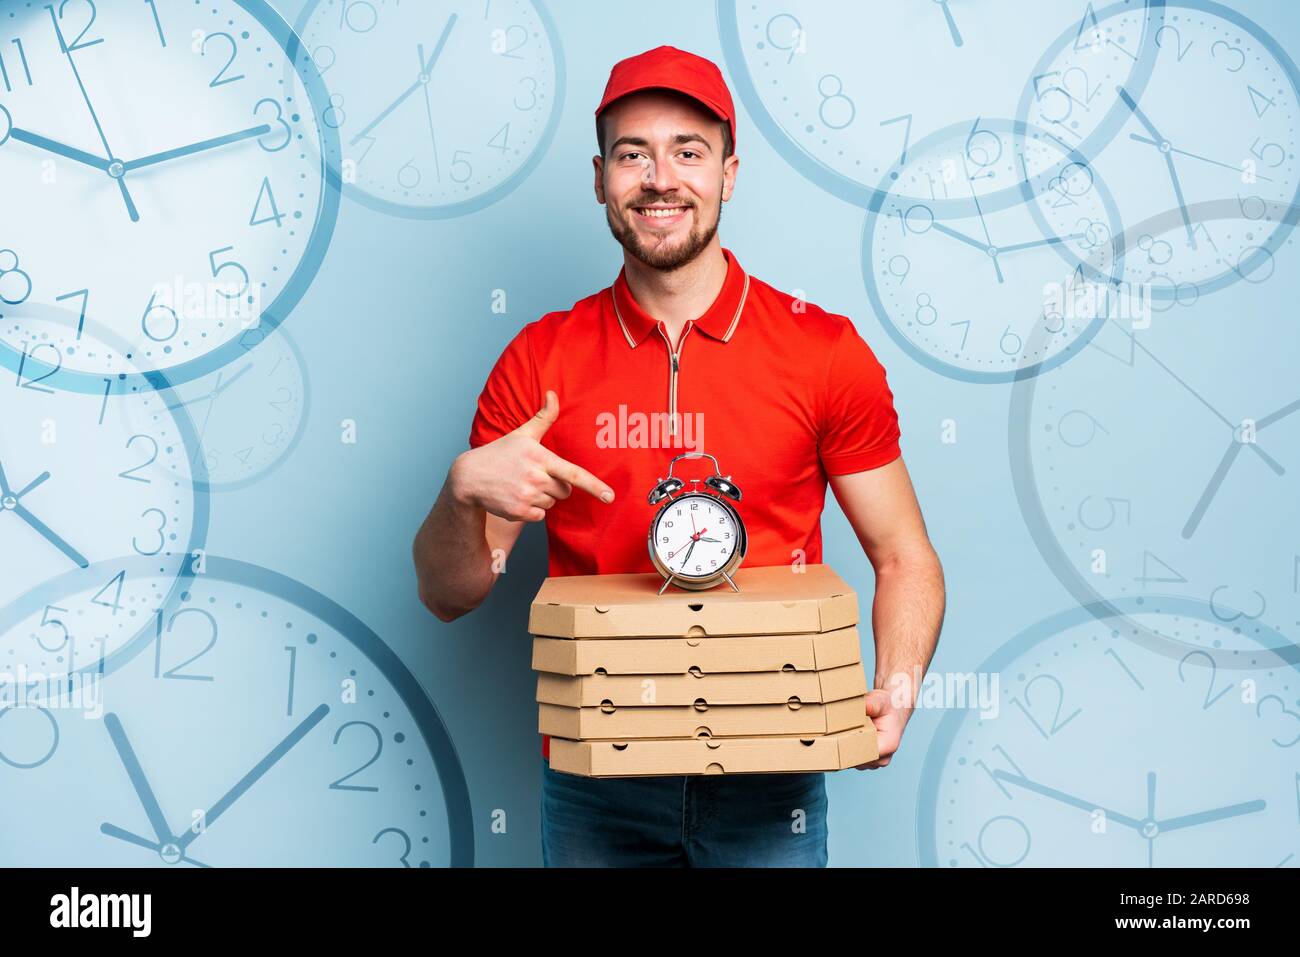 Deliveryman es puntual para entregar pizzas rápidamente. Fondo cian Foto de stock